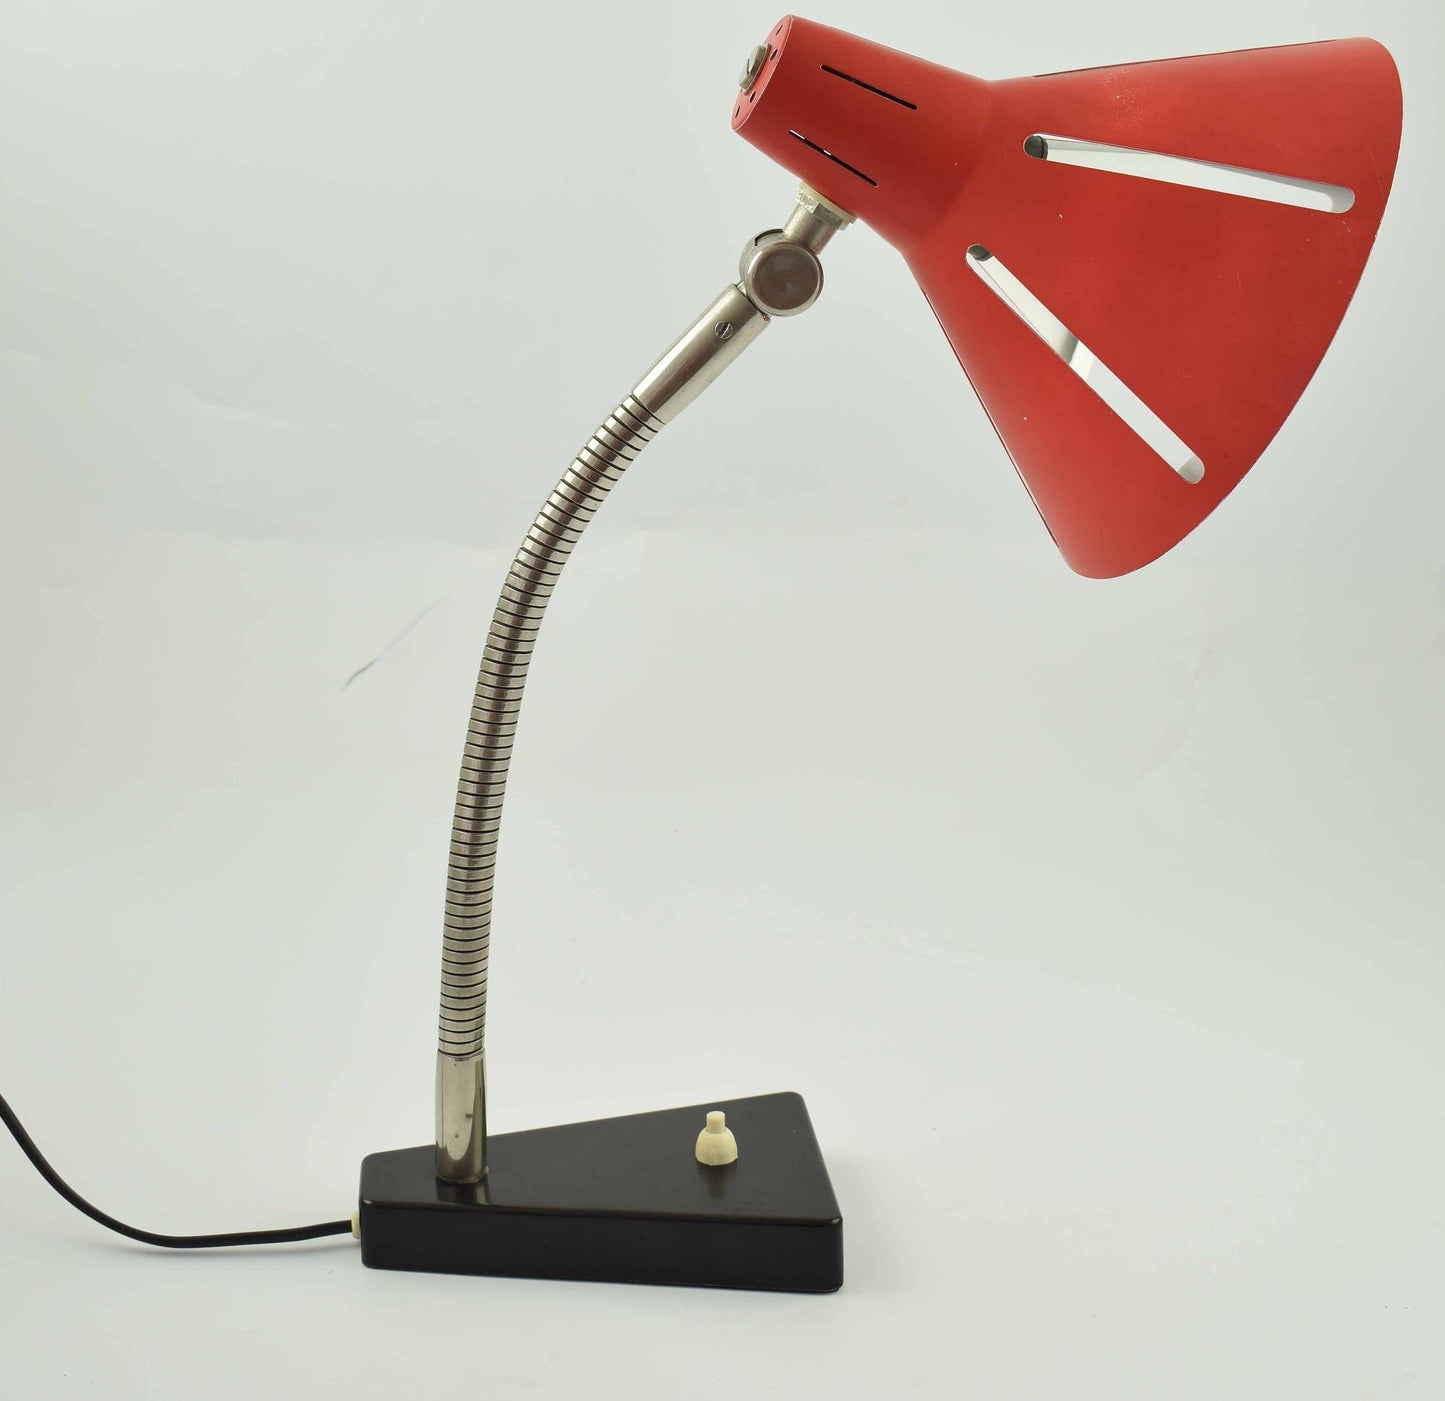 Hala zonneserie, serie sun, lámpara de mesa, excelente lámpara de escritorio clásica de diseño holandés de hala